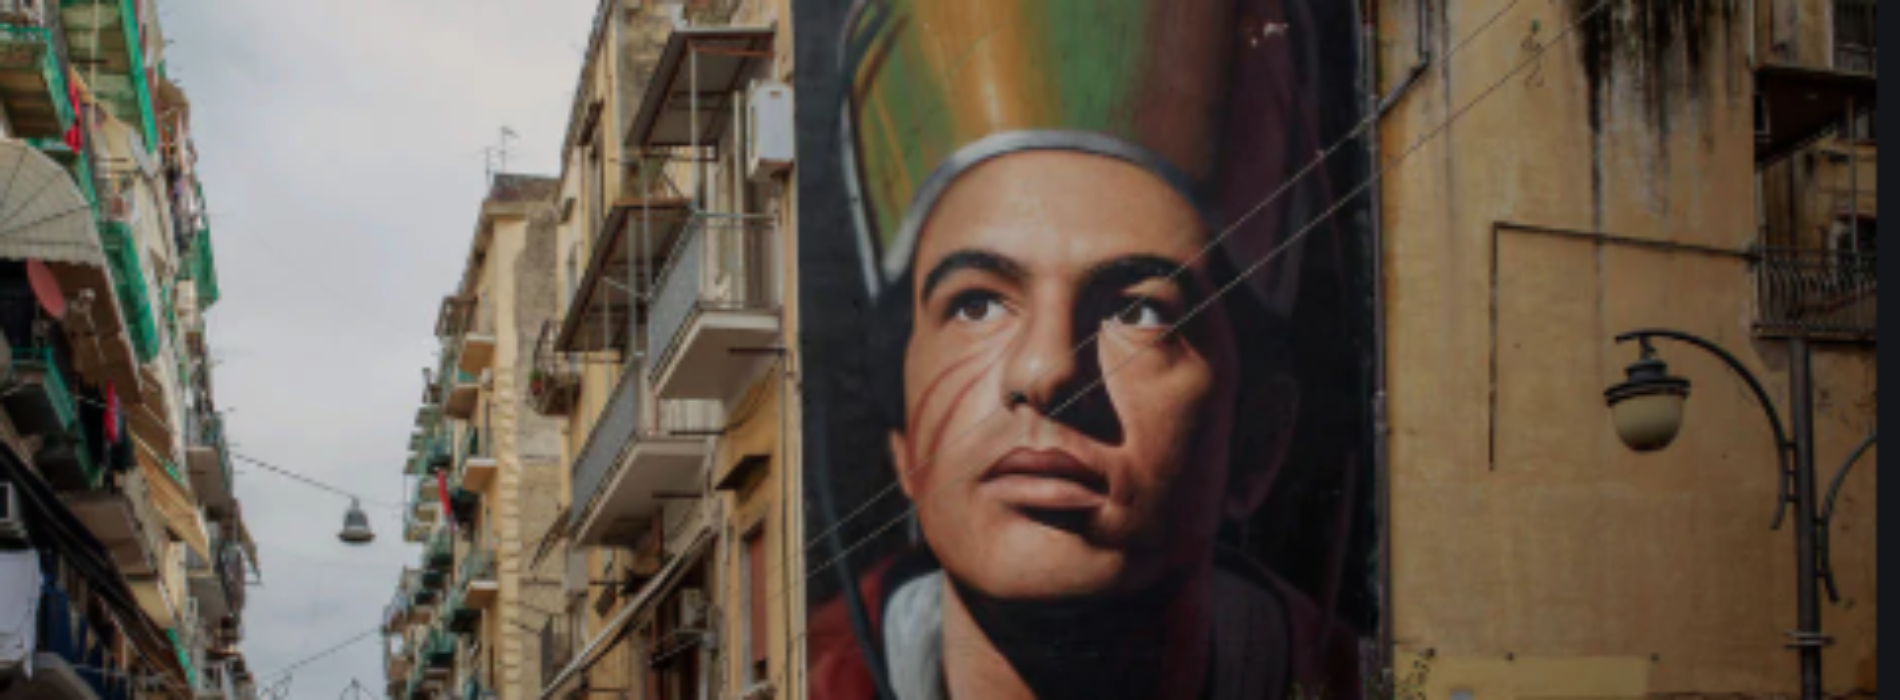 Napoli. Un murales di Jorit per il progetto Codici a Barra